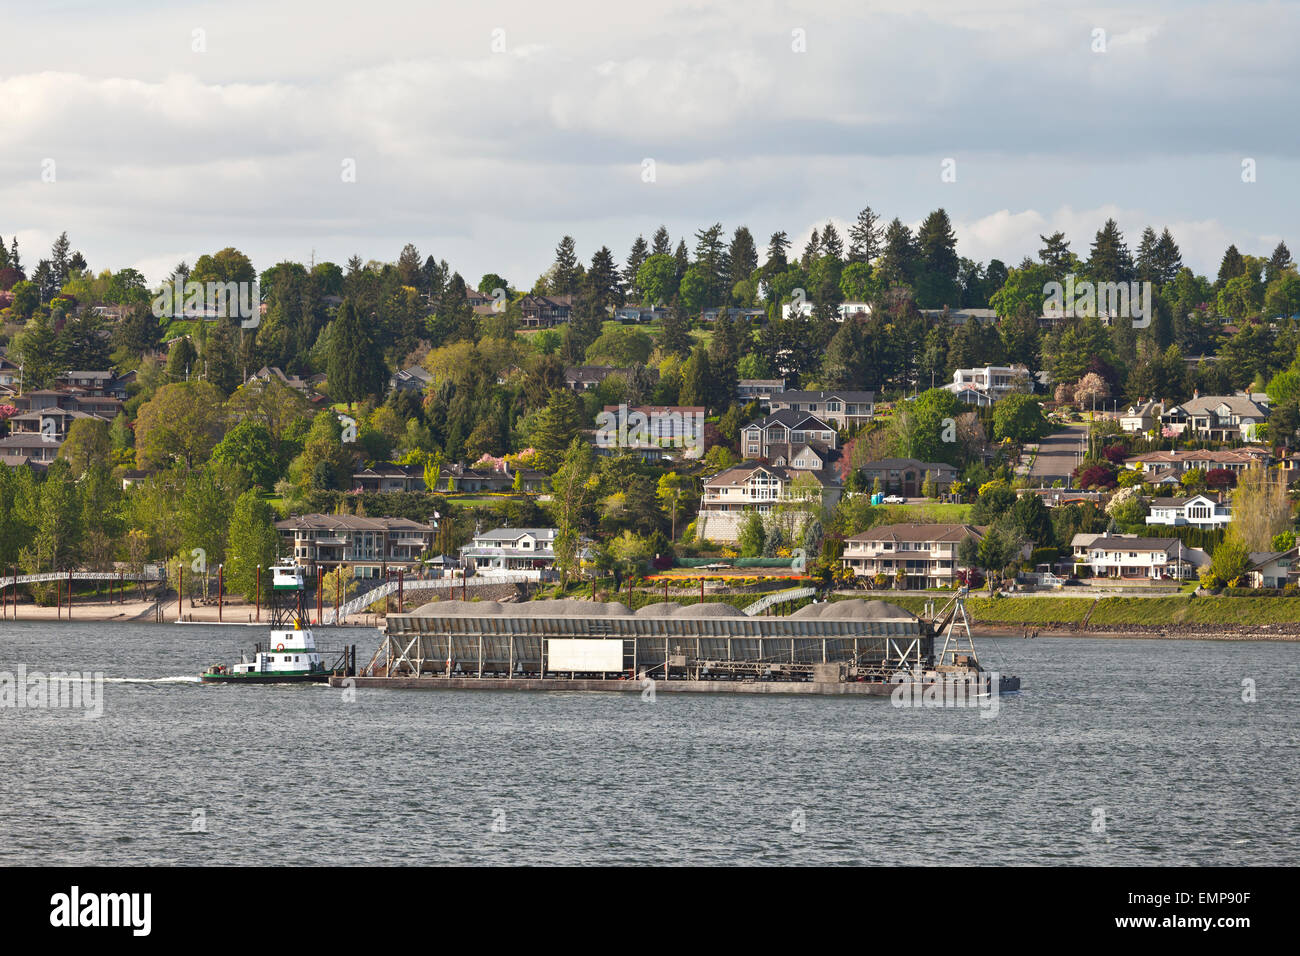 Barge passe par de nouveaux hôtels particuliers donnant sur la rivière Columbia, dans l'état de Washington. Banque D'Images